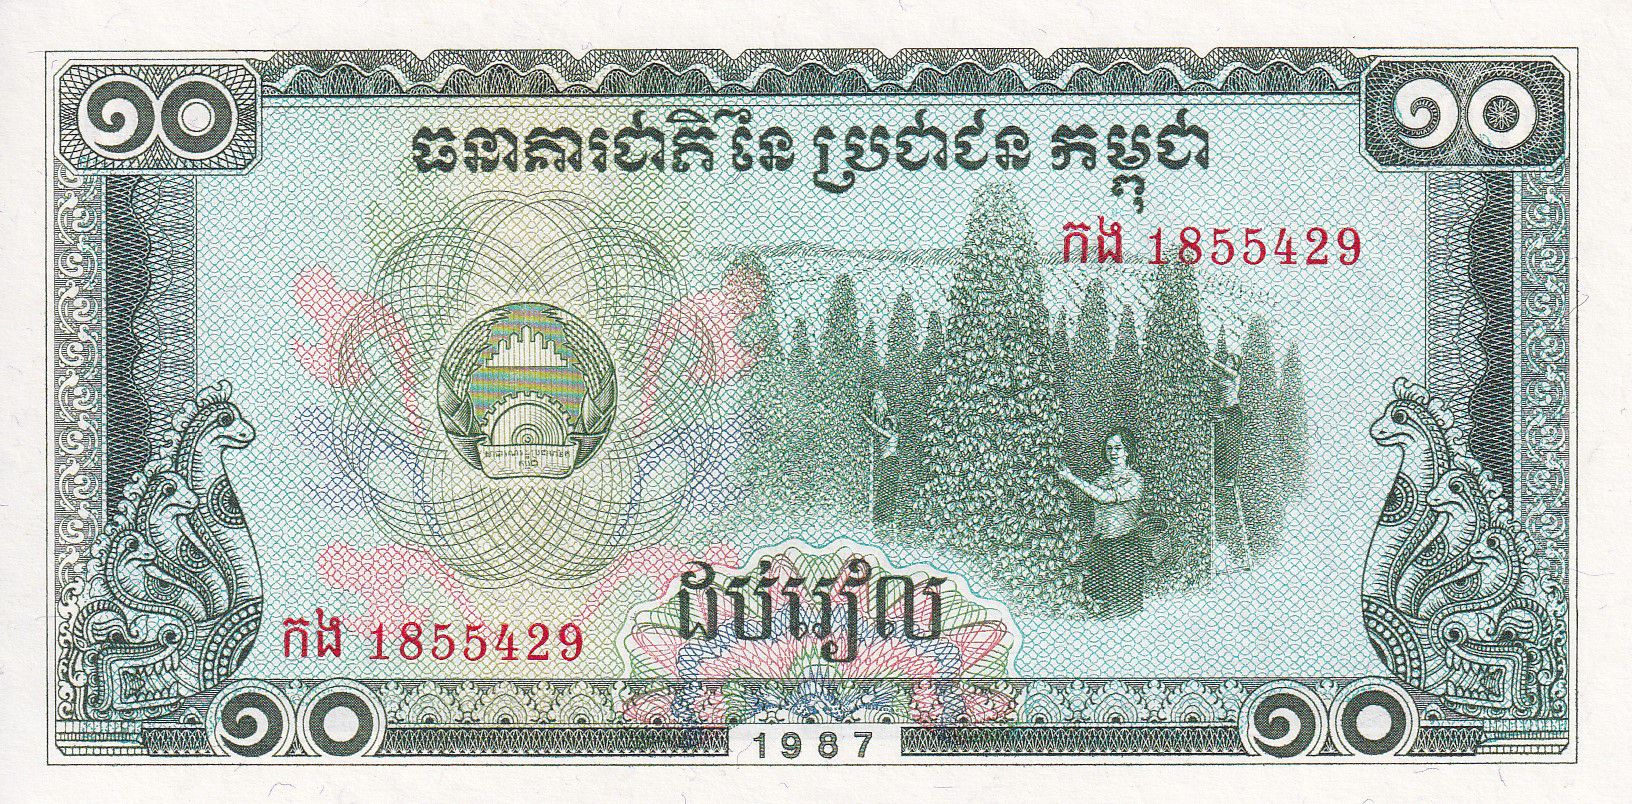 10 Riels UNC Cambodia 1987 P-34 